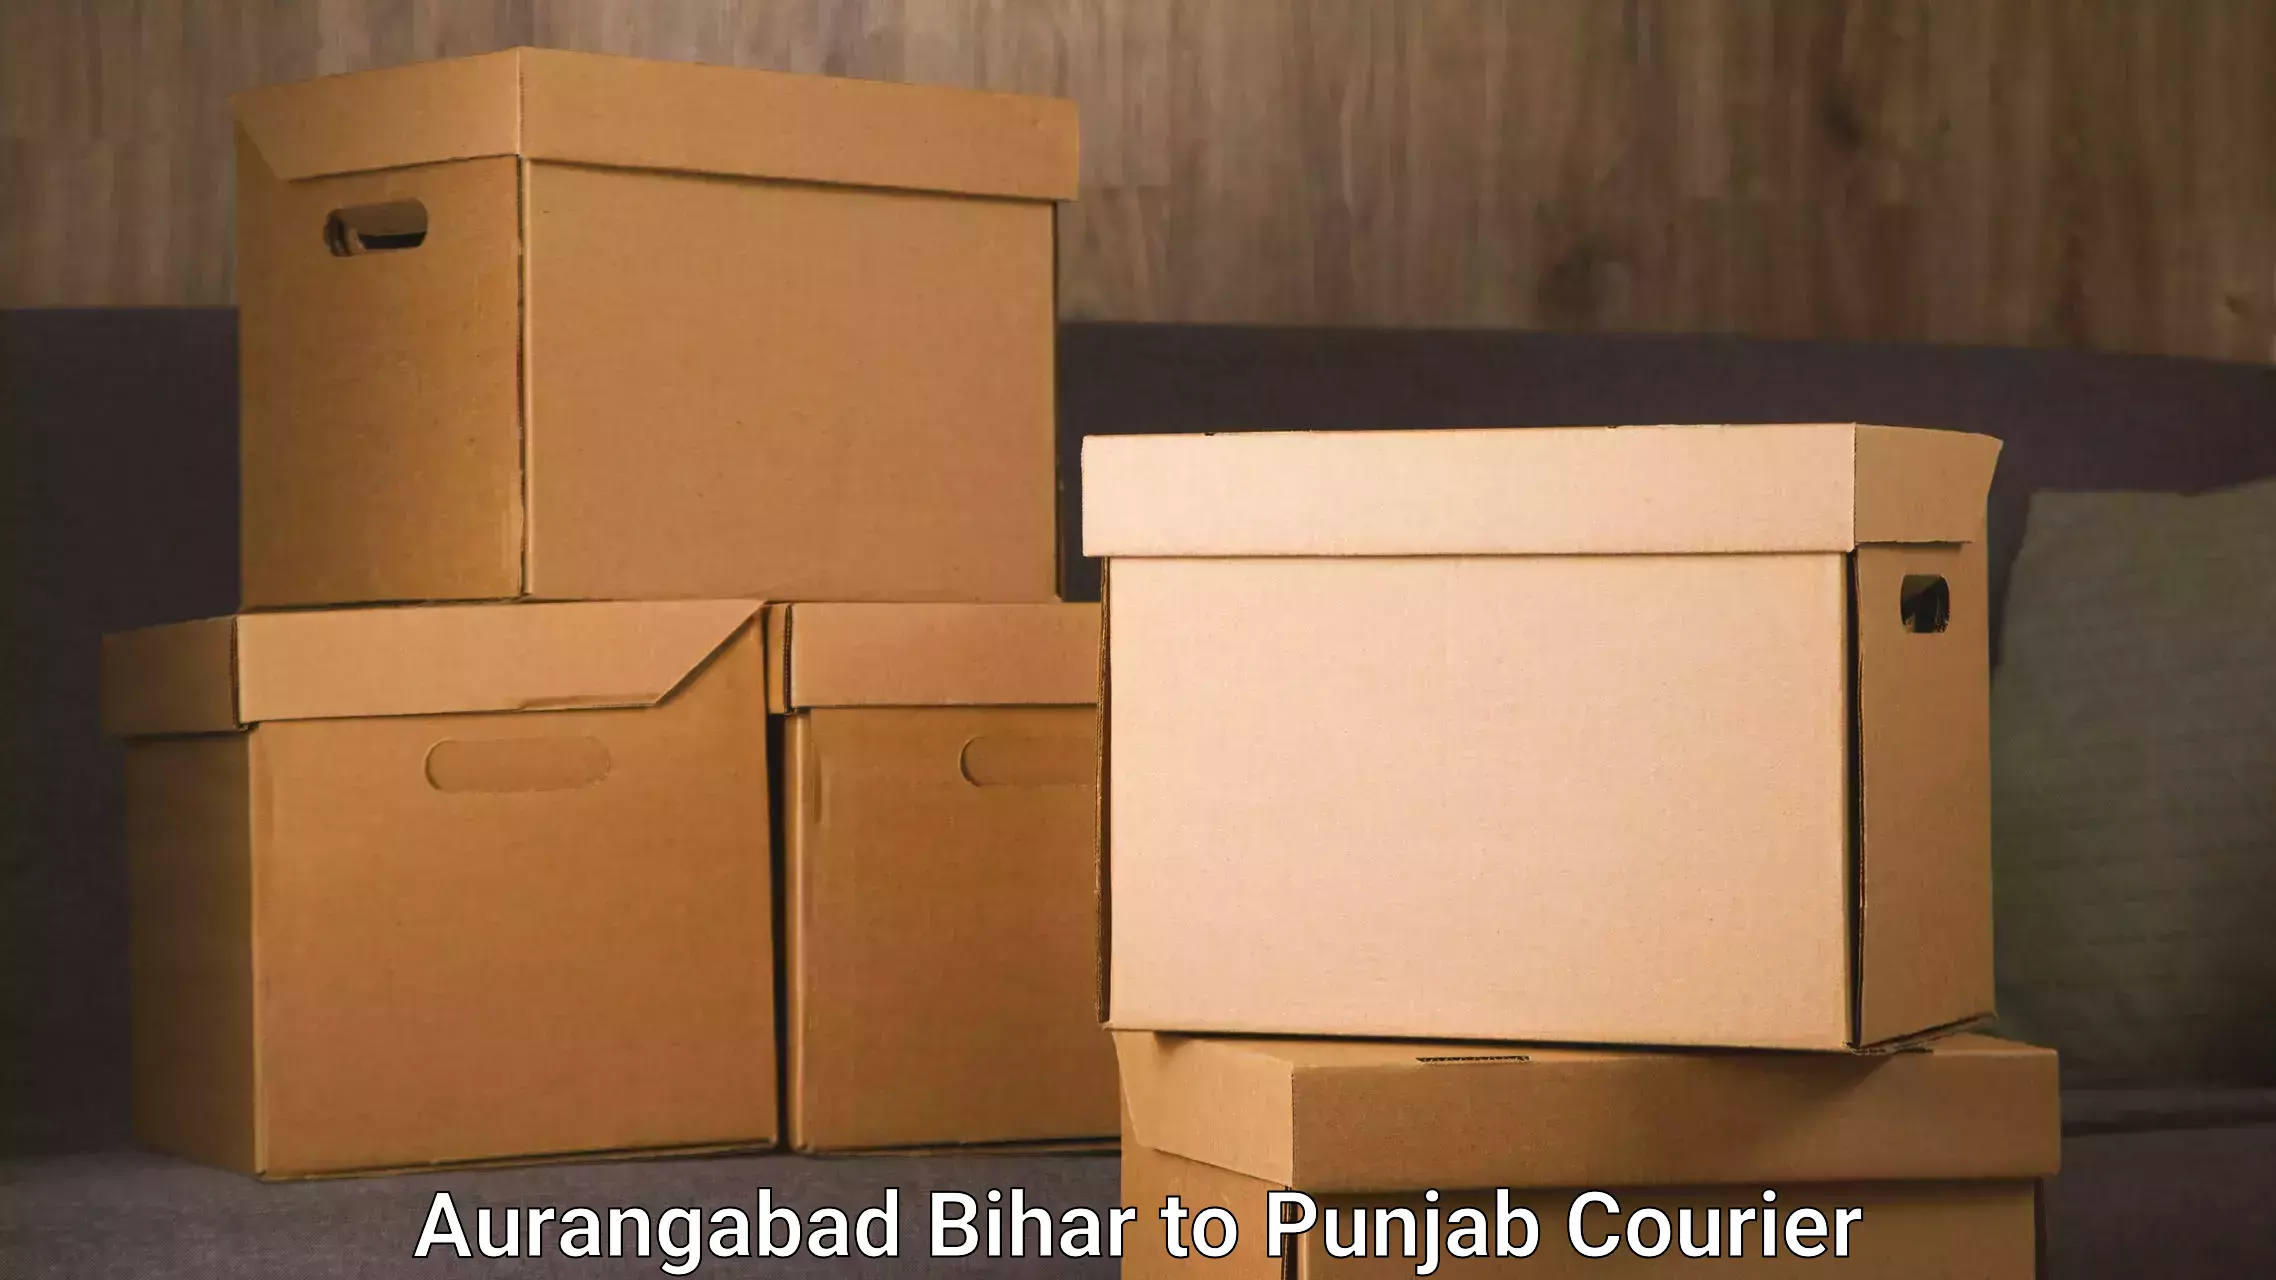 Furniture relocation experts Aurangabad Bihar to Dinanagar